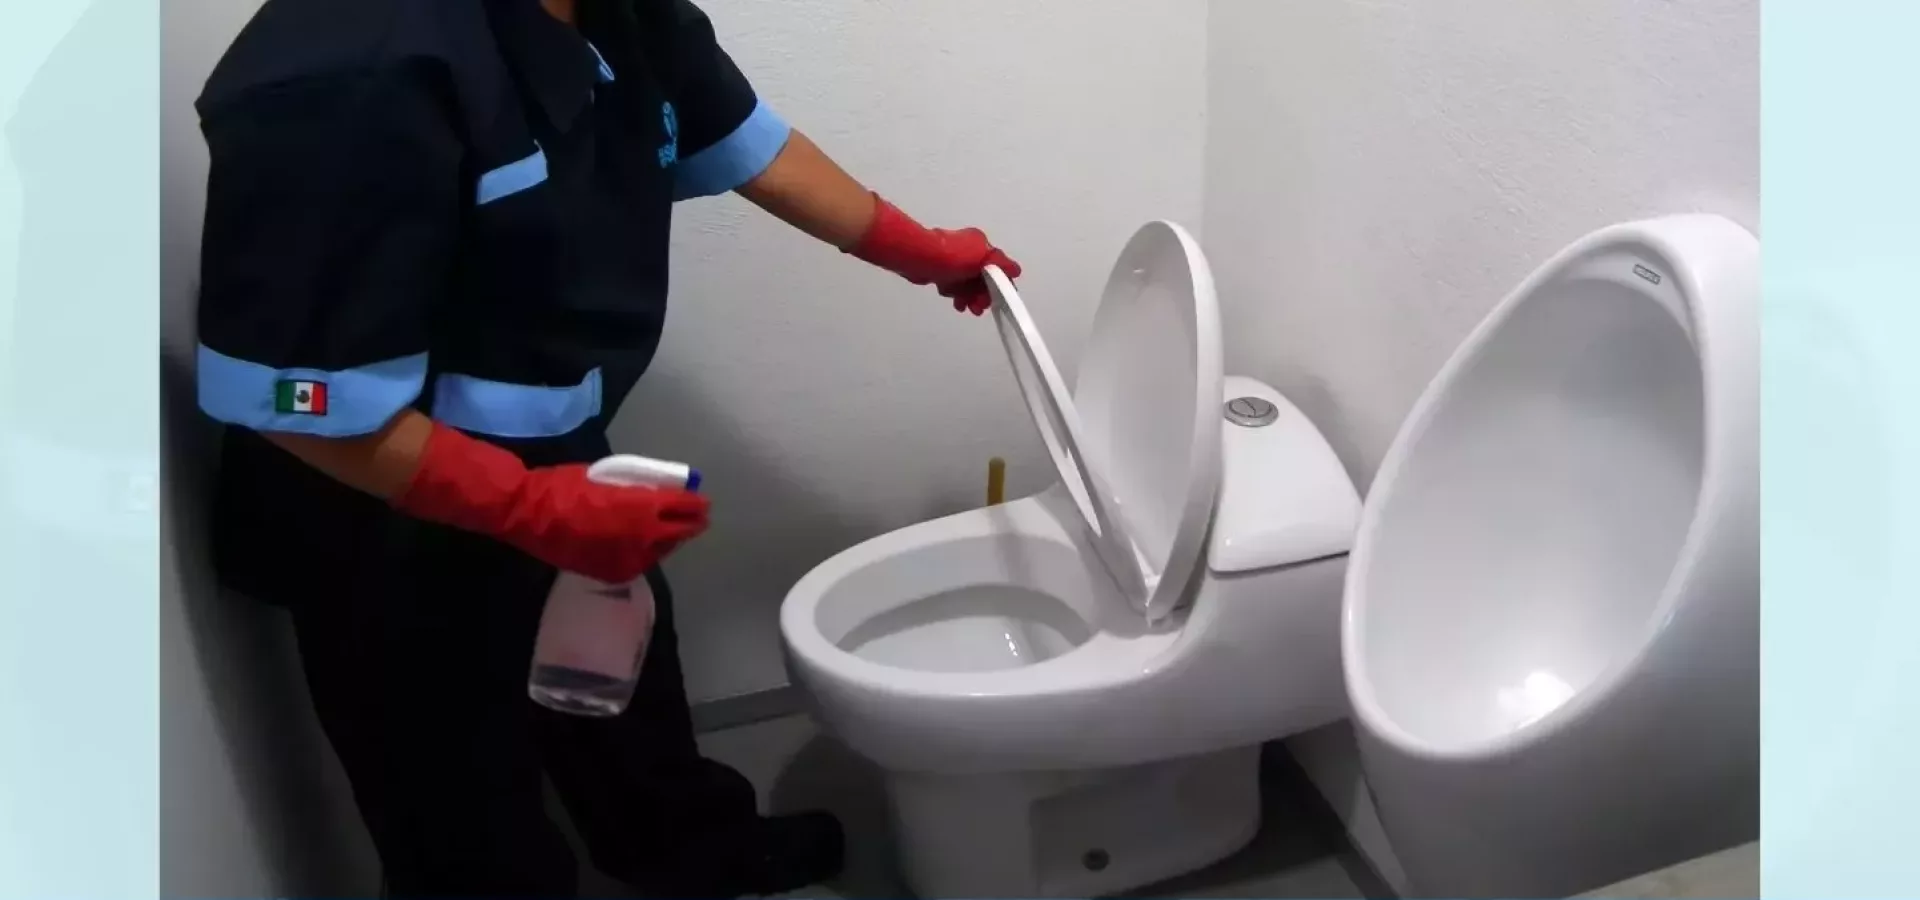 Cómo limpiar adecuadamente los baños de una oficina 